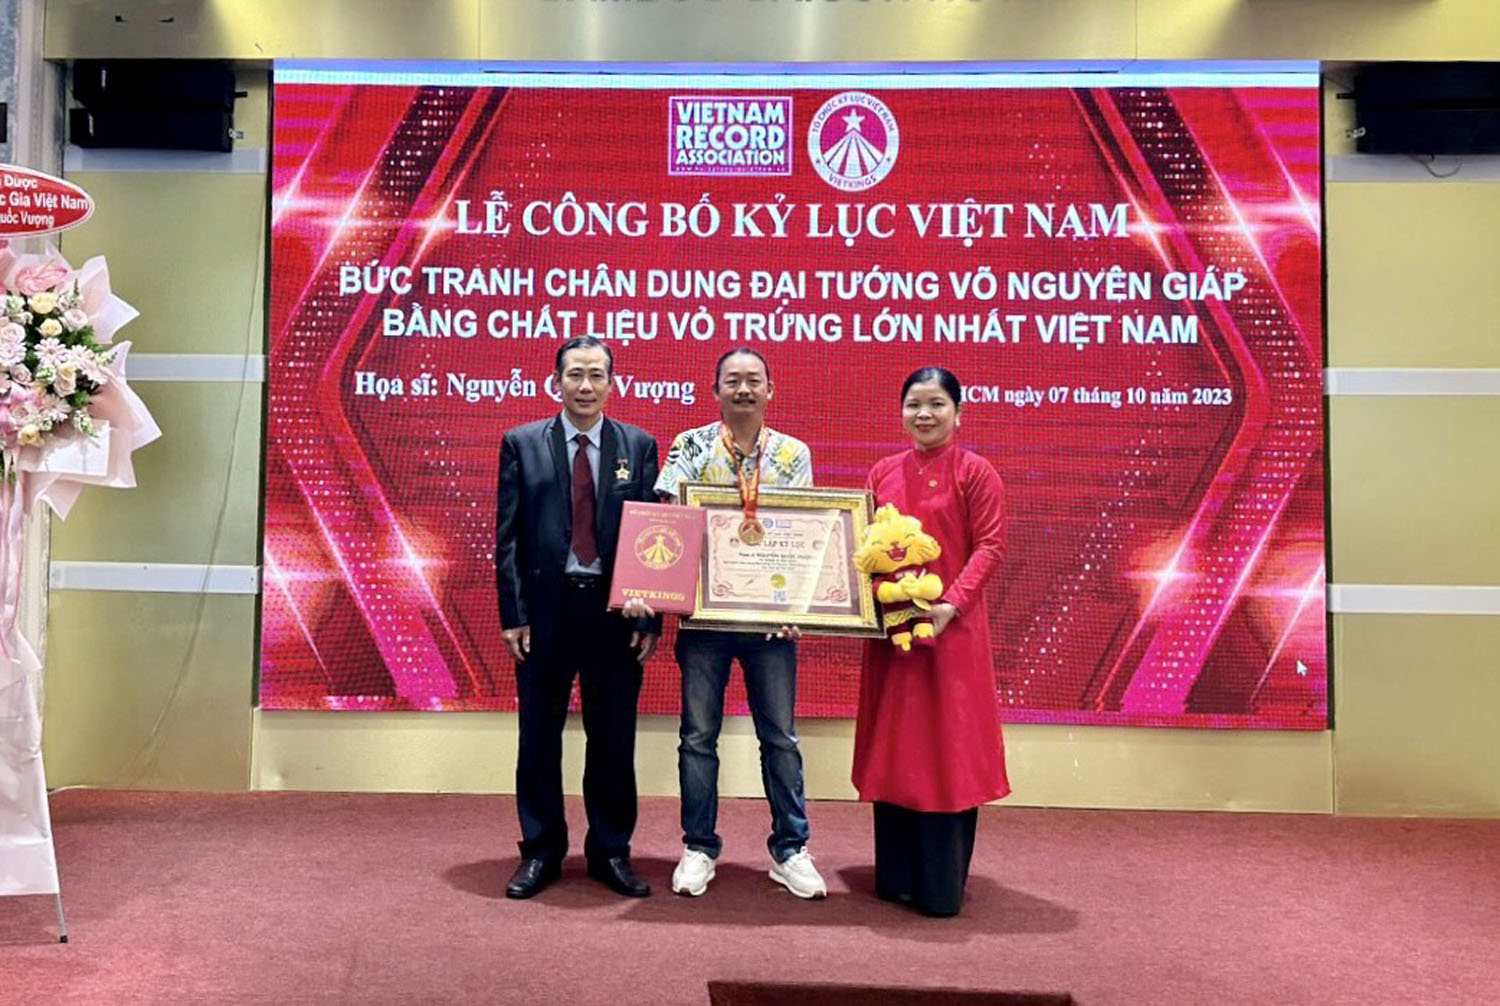 Tác phẩm "Vị tướng vì hoà bình" xác lập kỷ lục Việt Nam